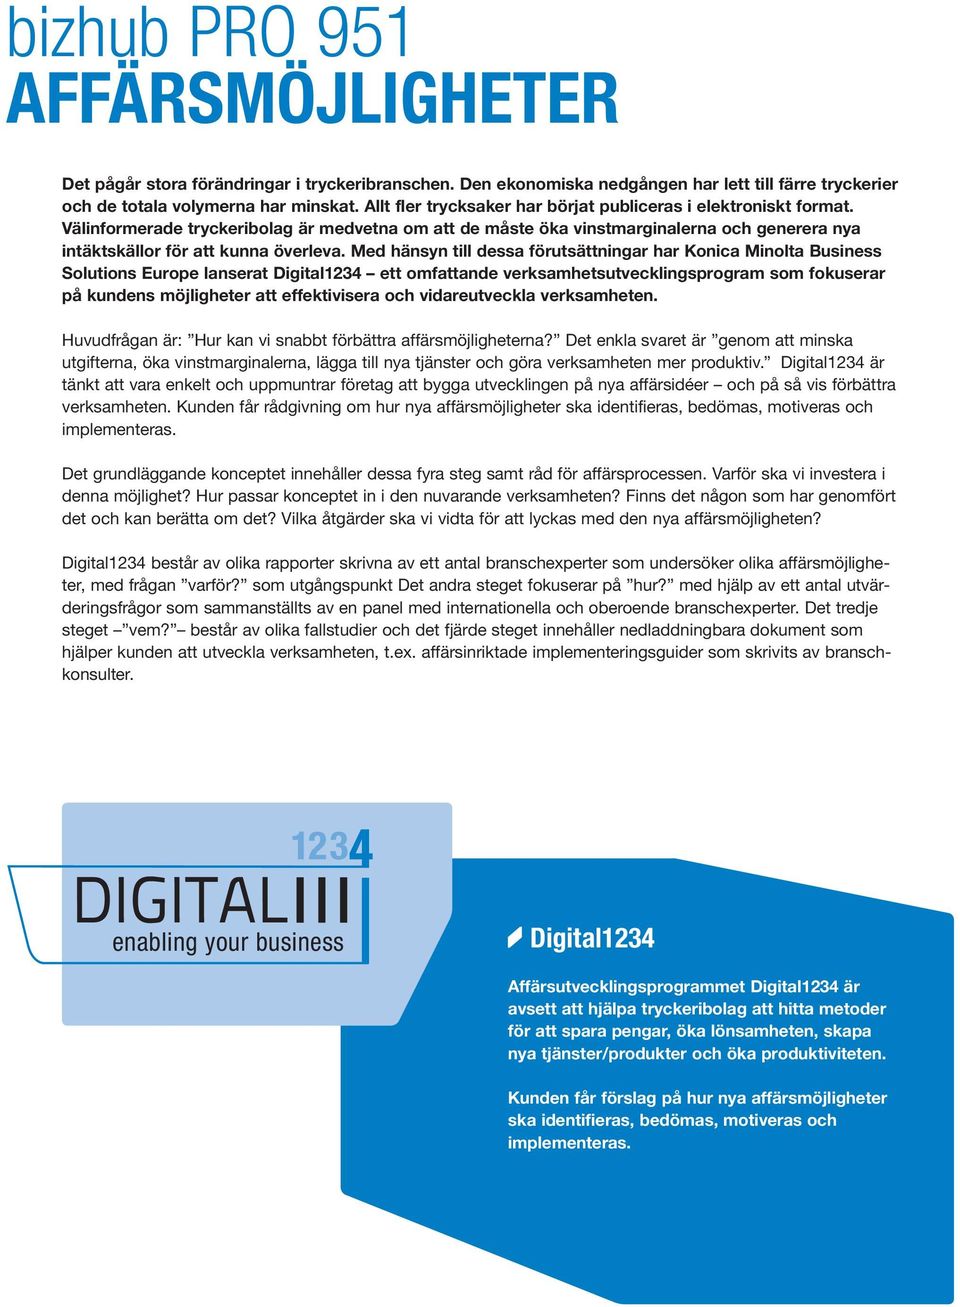 Med hänsyn till dessa förutsättningar har Konica Minolta Business Solutions Europe lanserat Digital1234 ett omfattande verksamhetsutvecklingsprogram som fokuserar på kundens möjligheter att